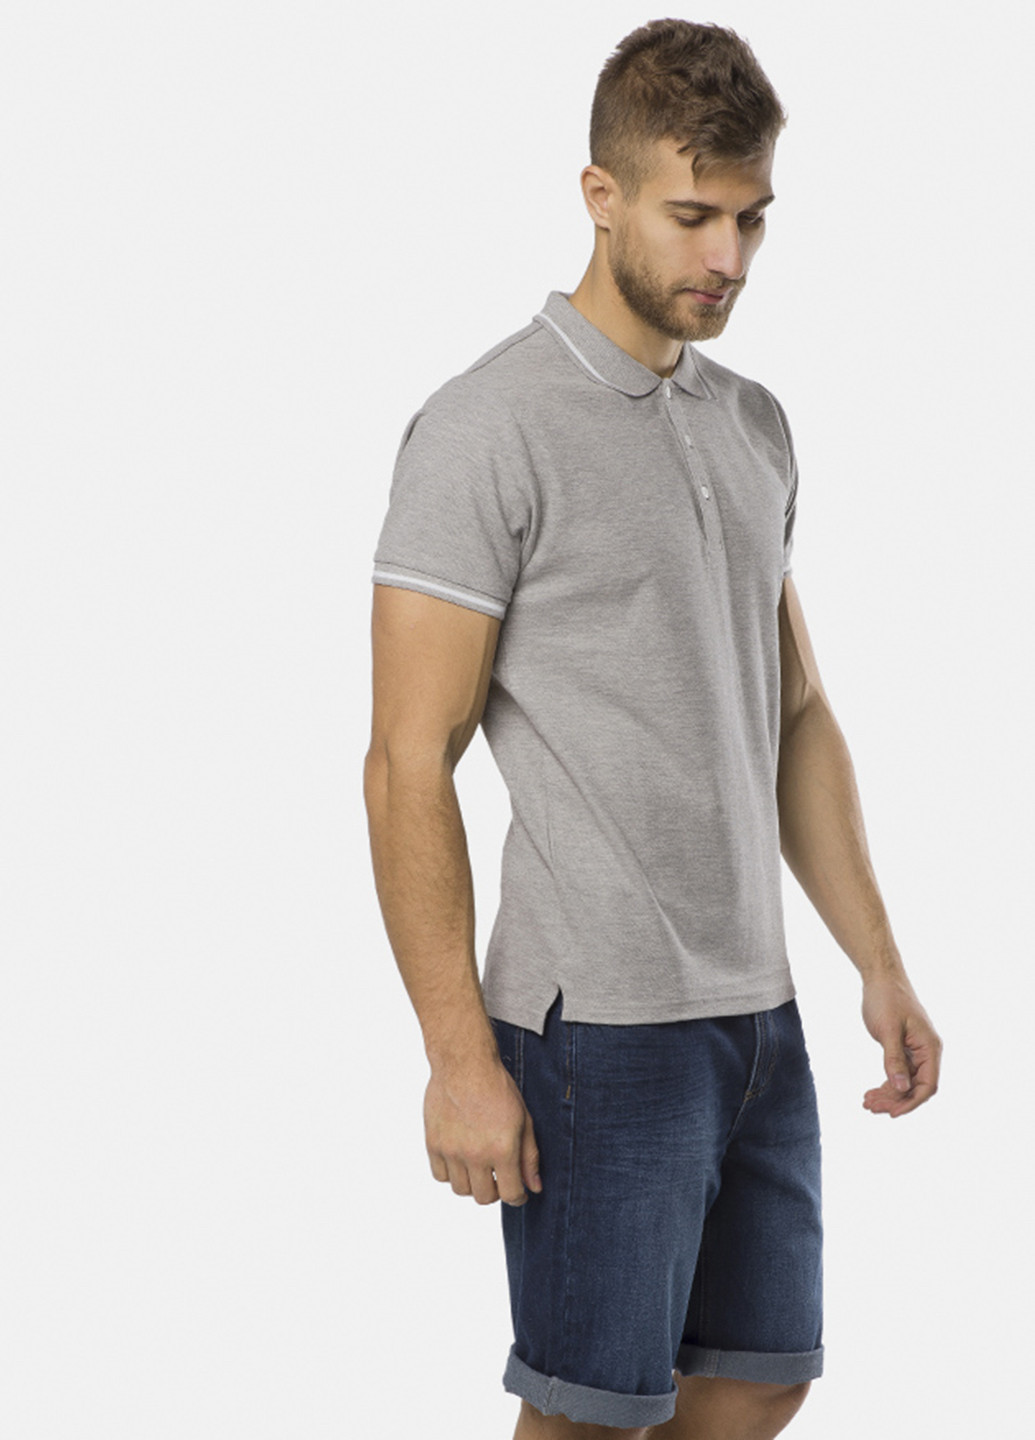 Светло-серая футболка-поло для мужчин MR 520 однотонная